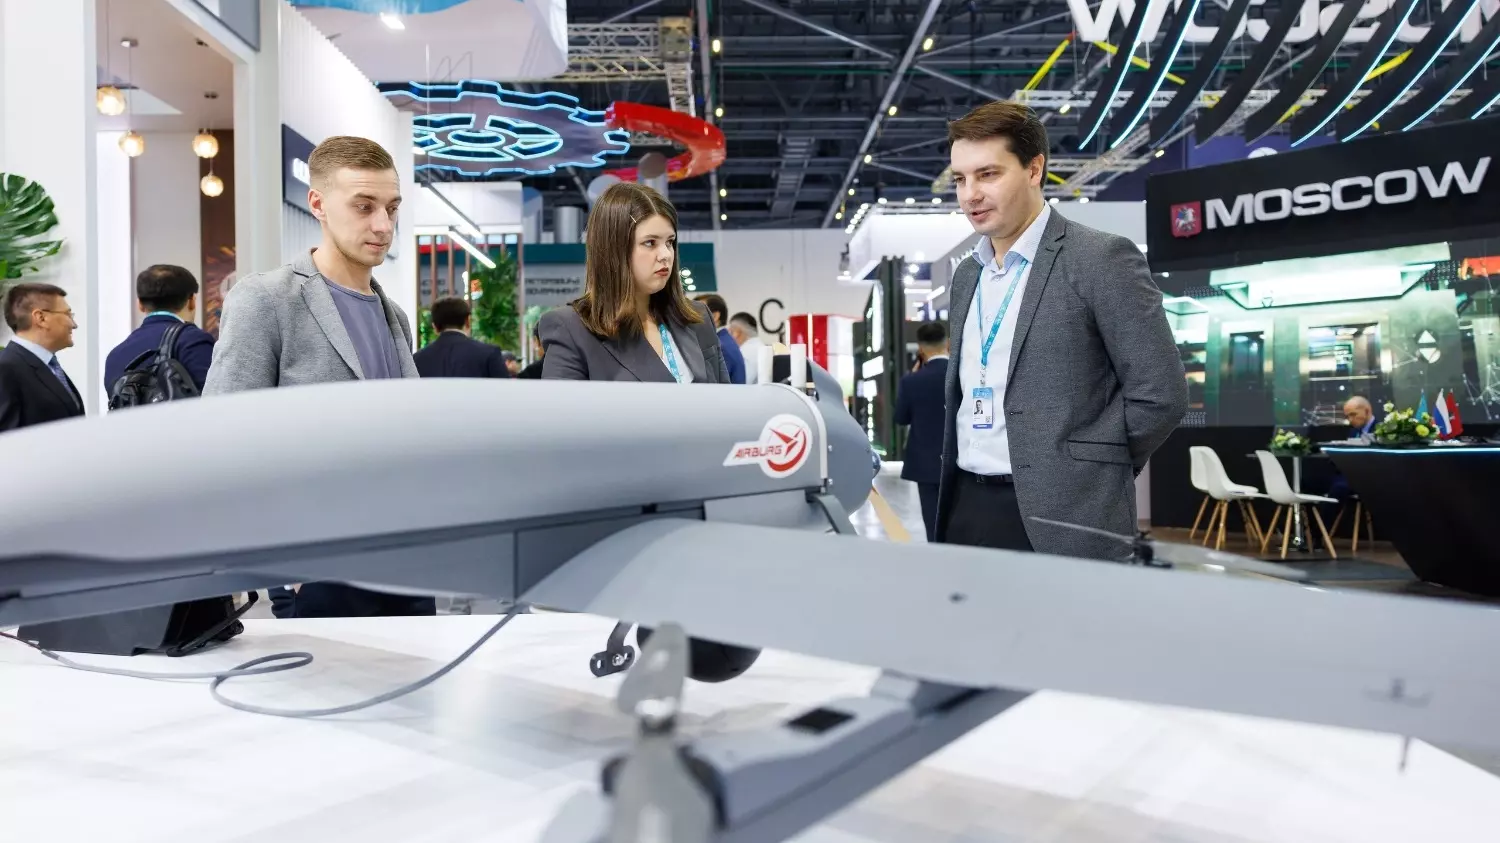 АО "ЭЙРБУРГ" стало участником международной промышленной выставки "Иннопром" и представили беспилотный летательный аппарат "Пчёлка".